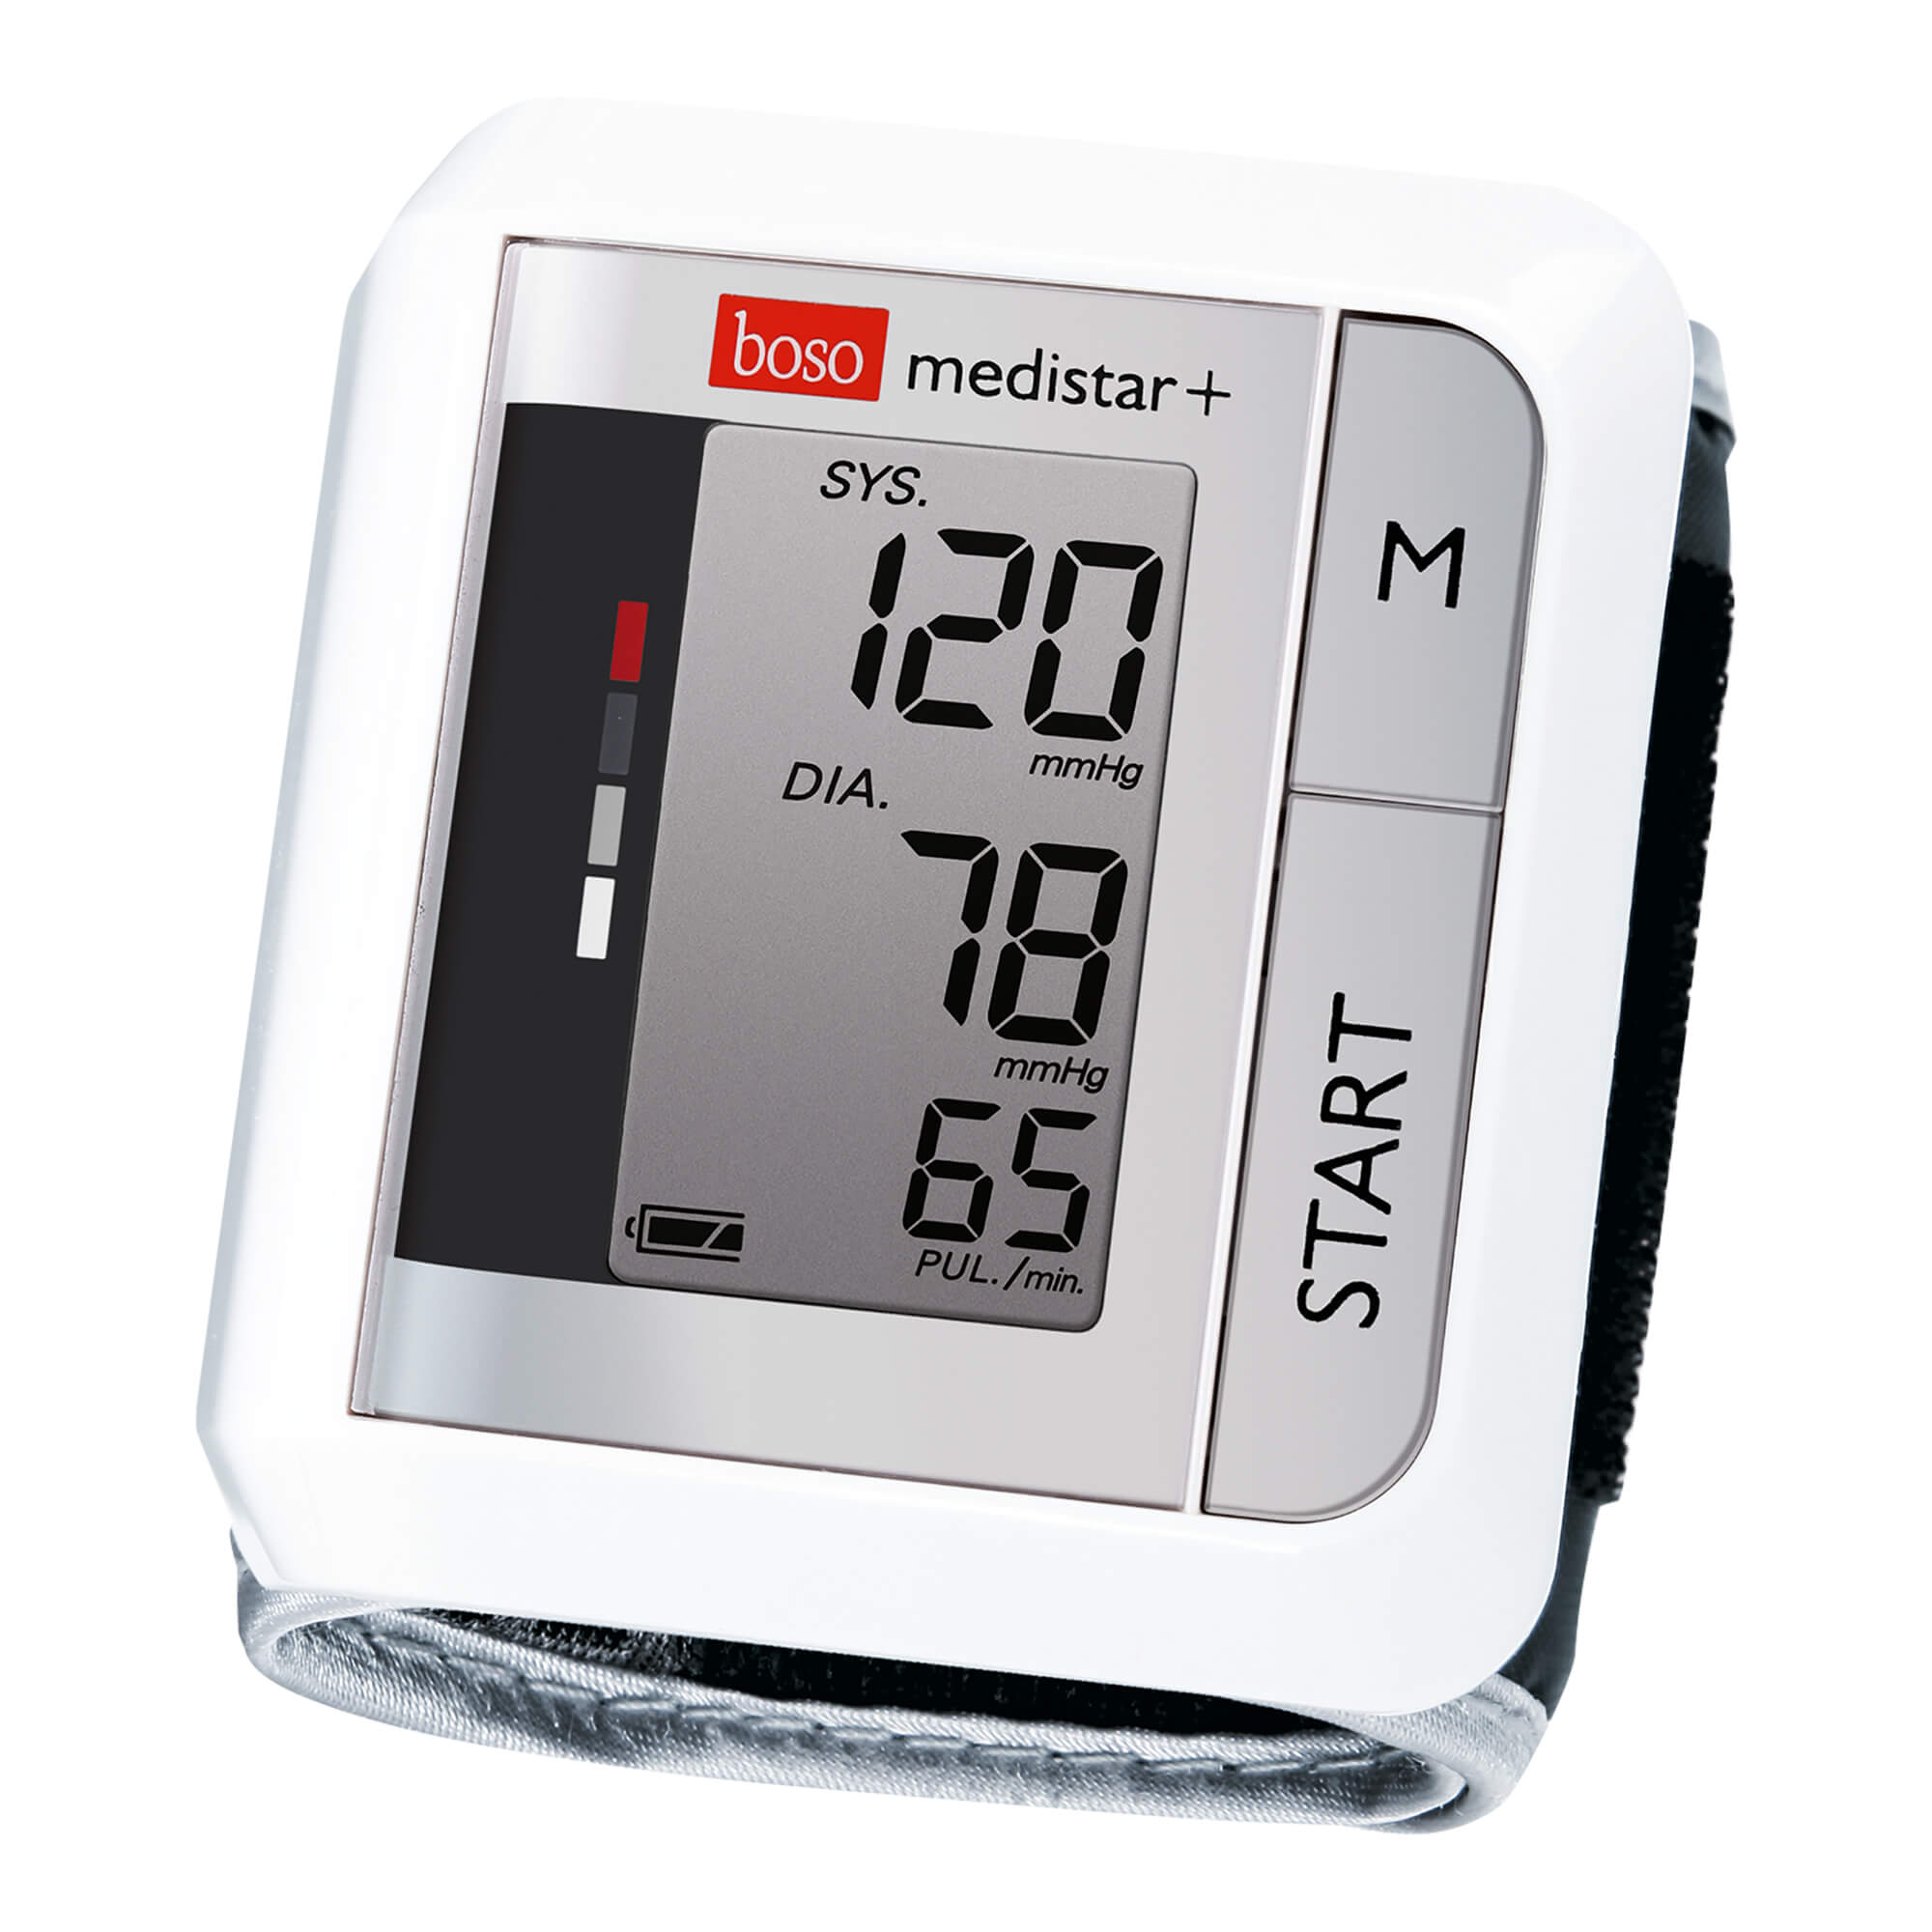 Vollautomatisches Blutdruckmessgerät für die Messung am Handgelenk.